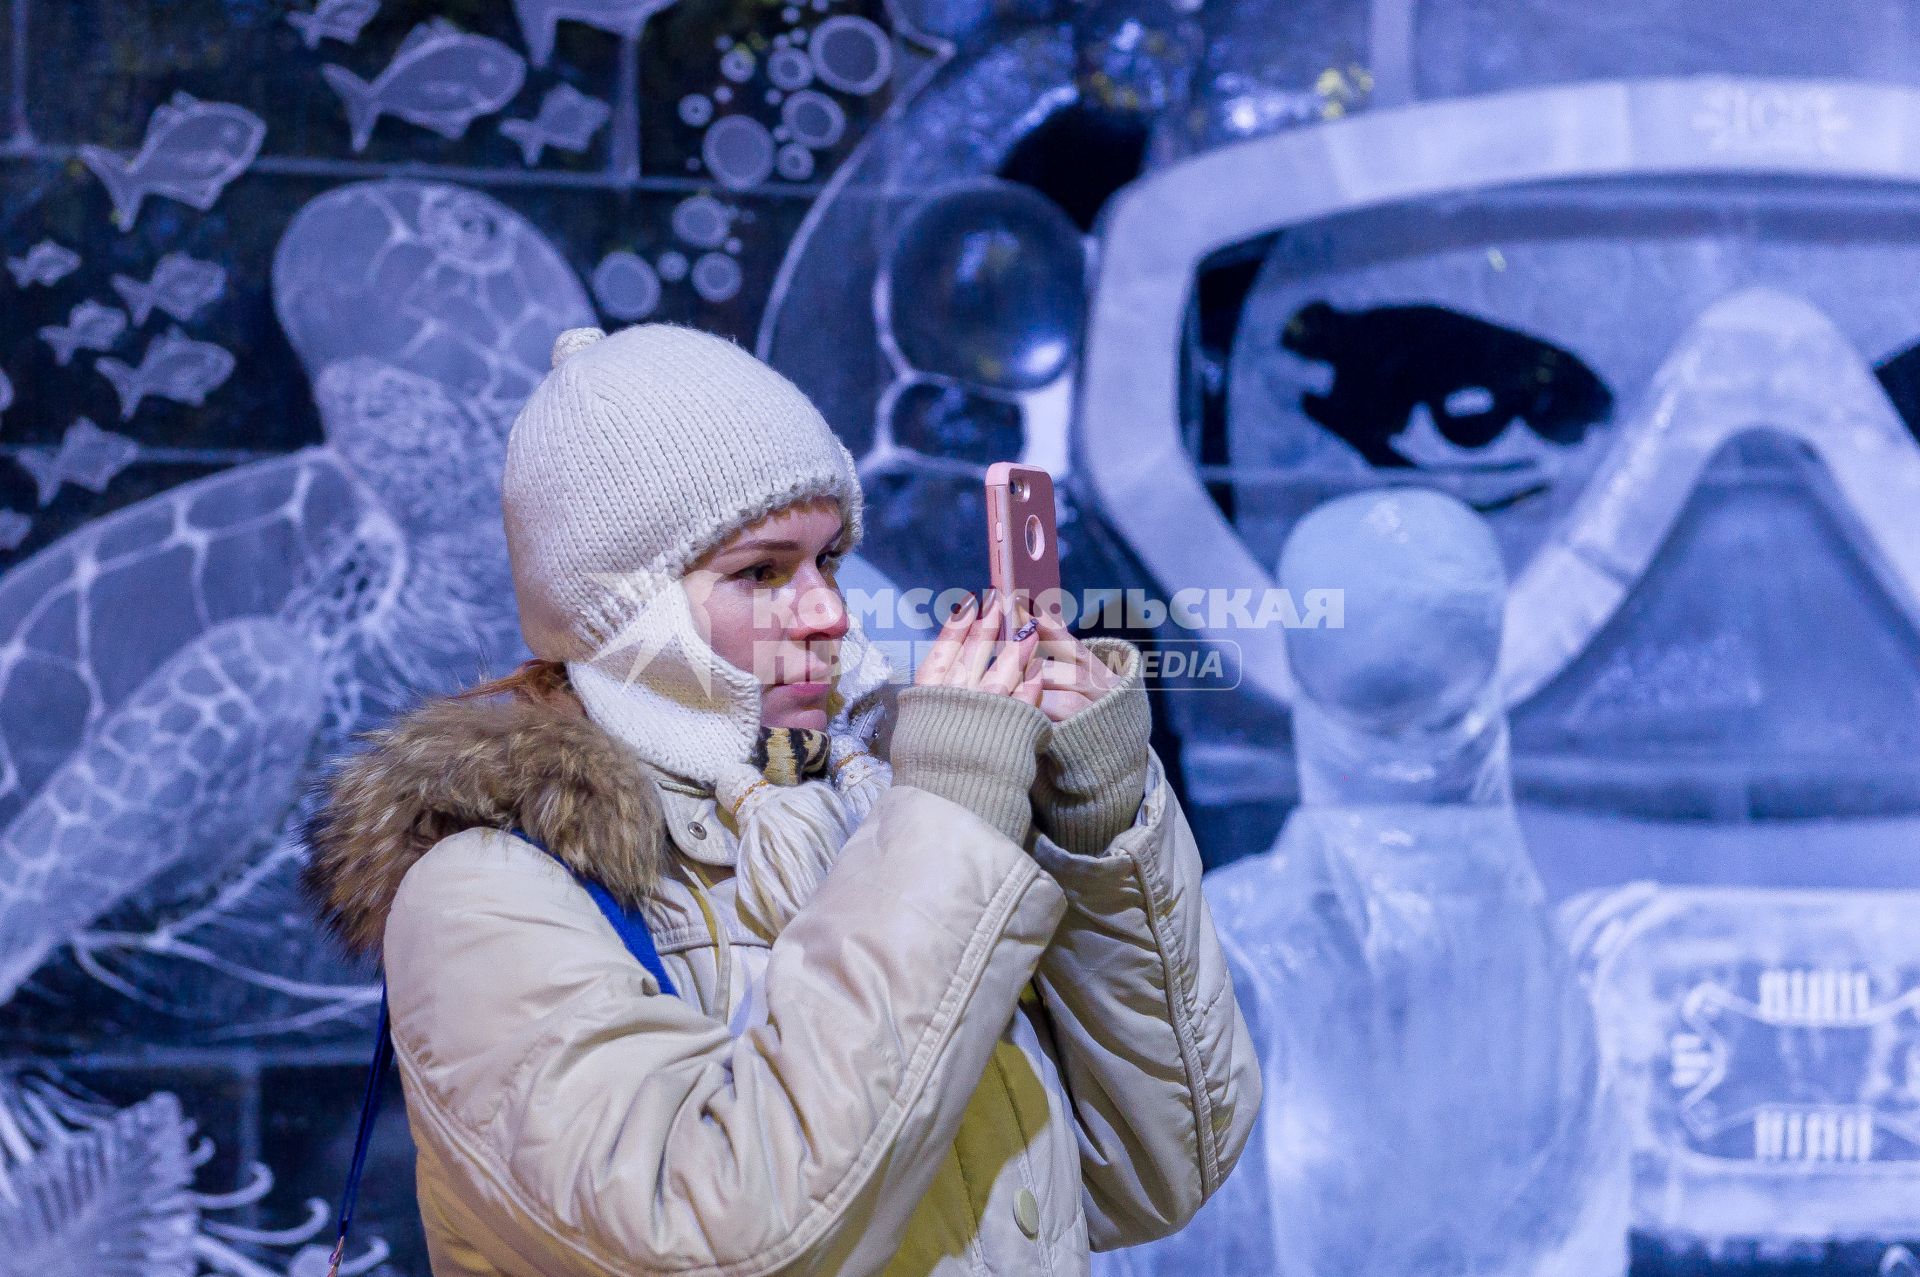 Санкт-Петербург. Посетительница на фестивале ледовых скульптур ICE Fantasy в Петропавловской крепости.